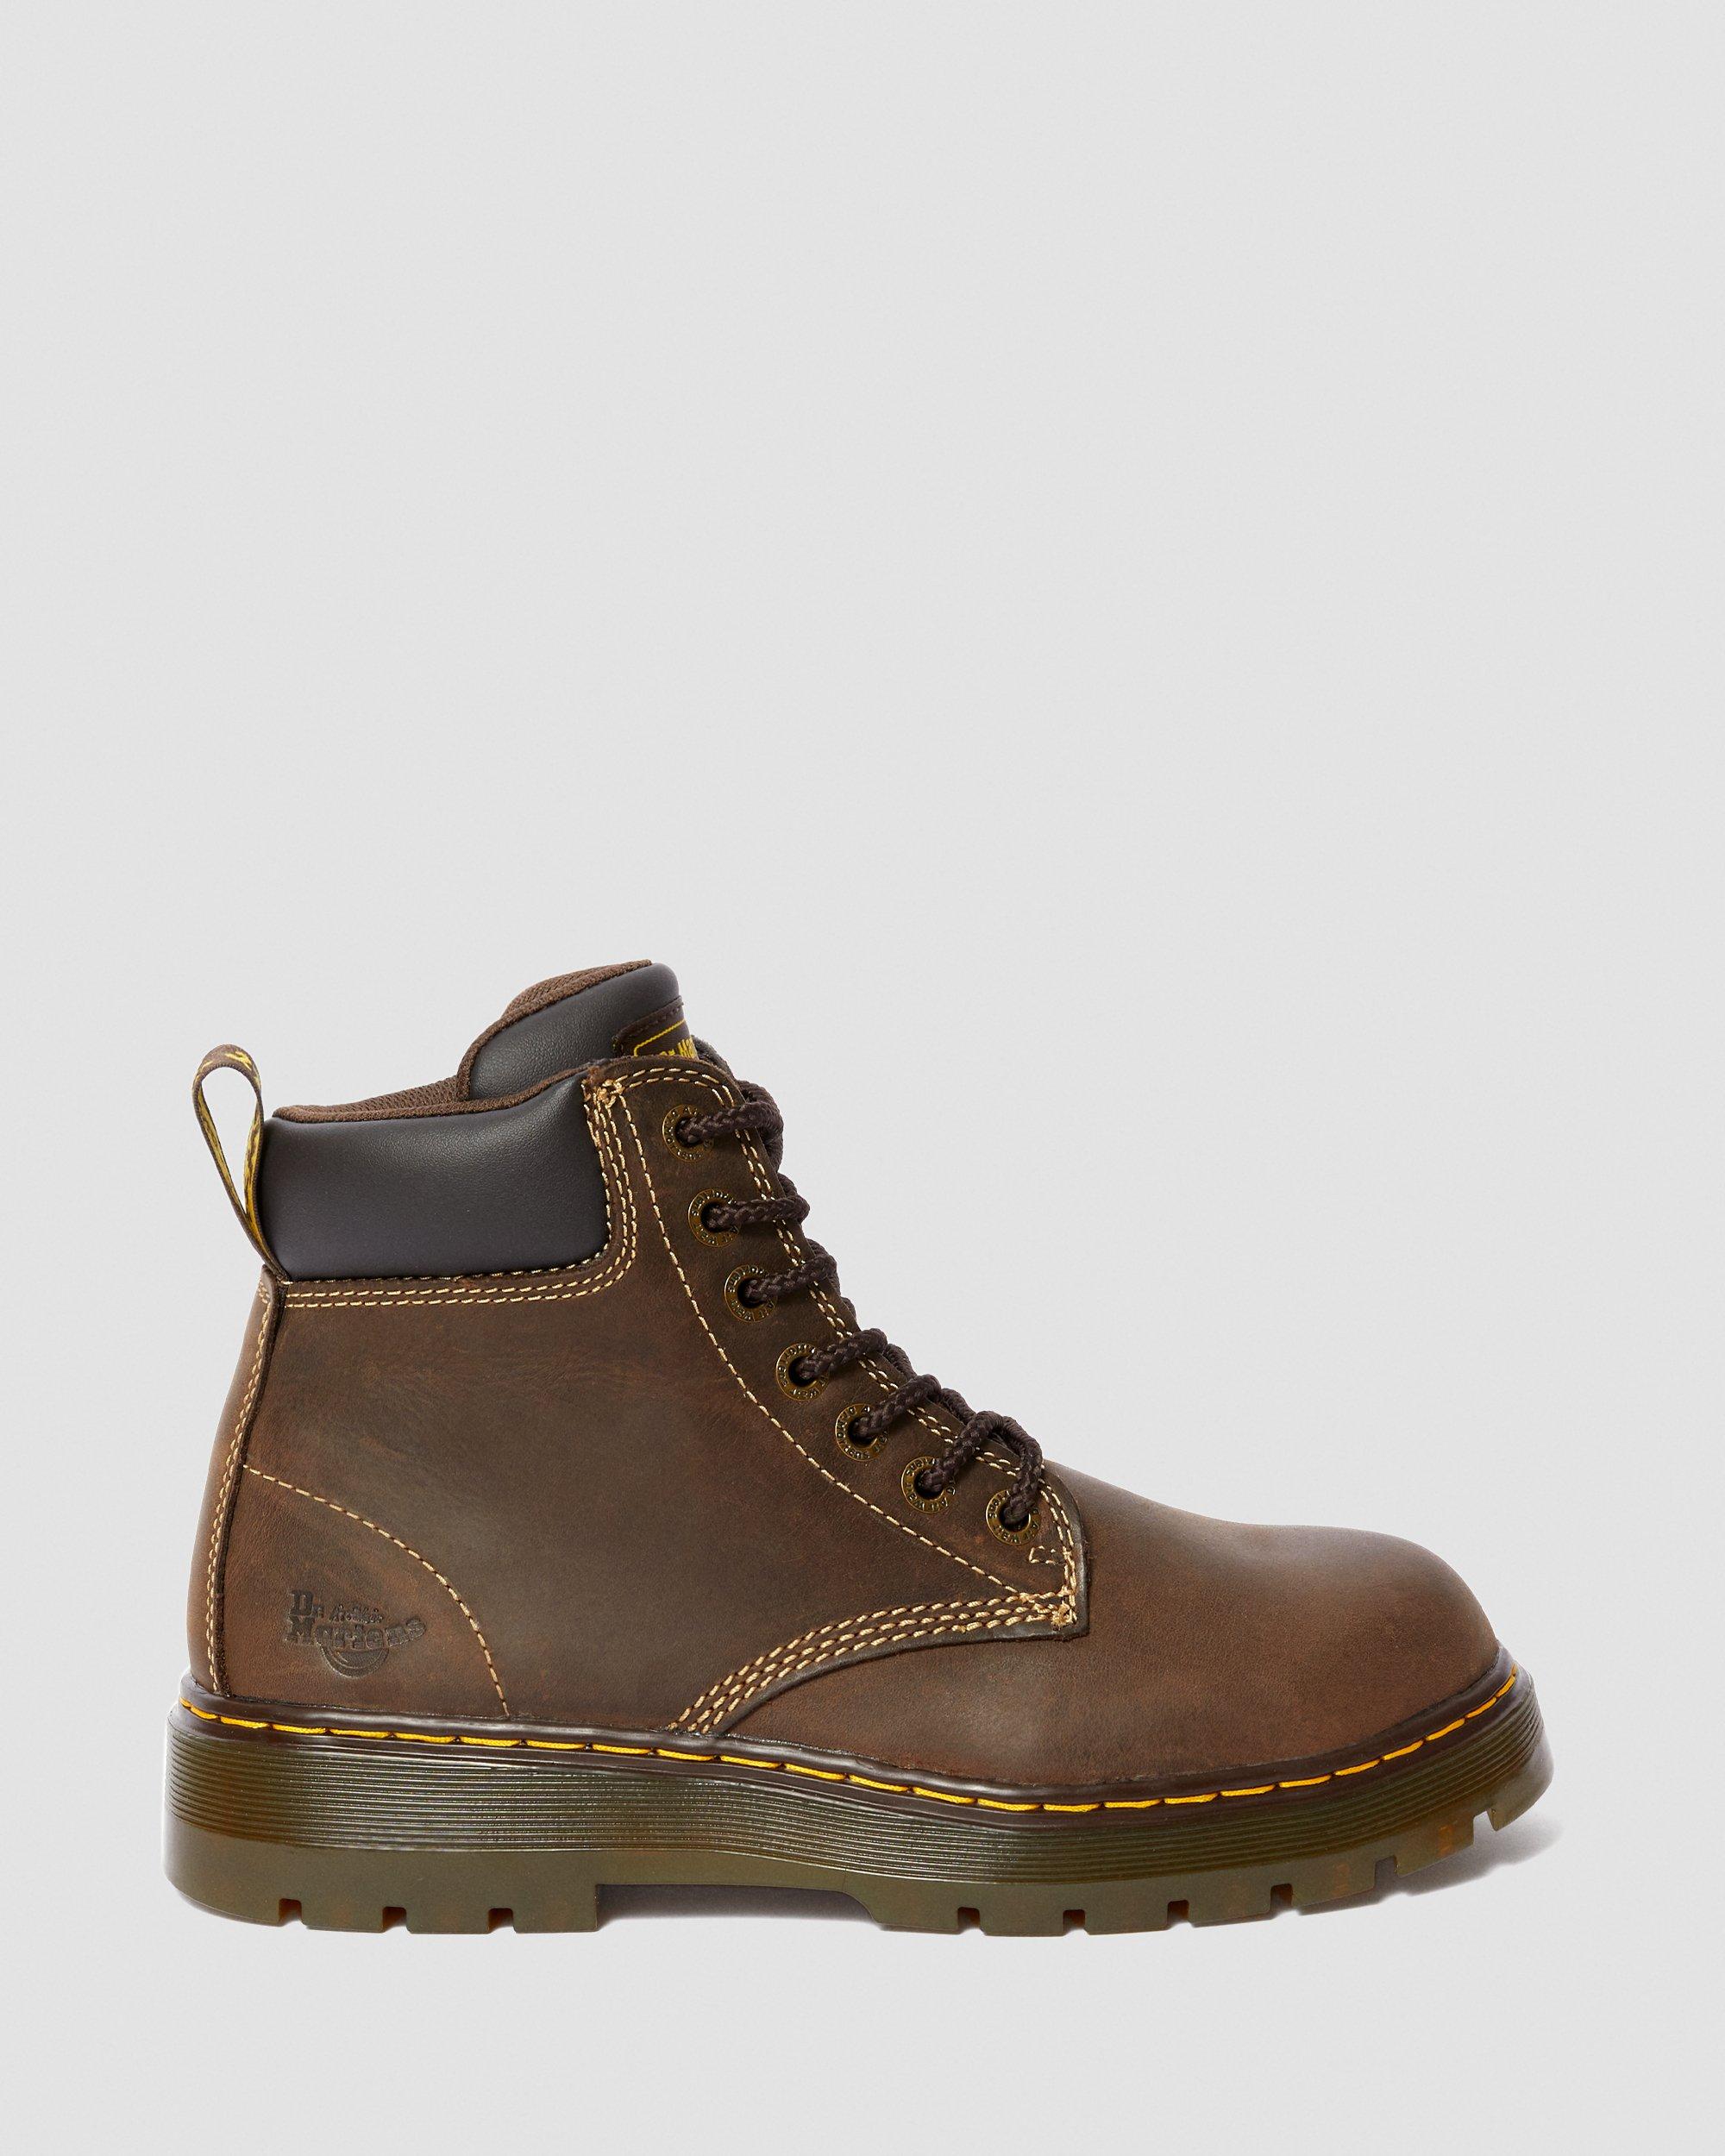 Winch Extra Wide Work Boots in Dark Brown | Dr. Martens